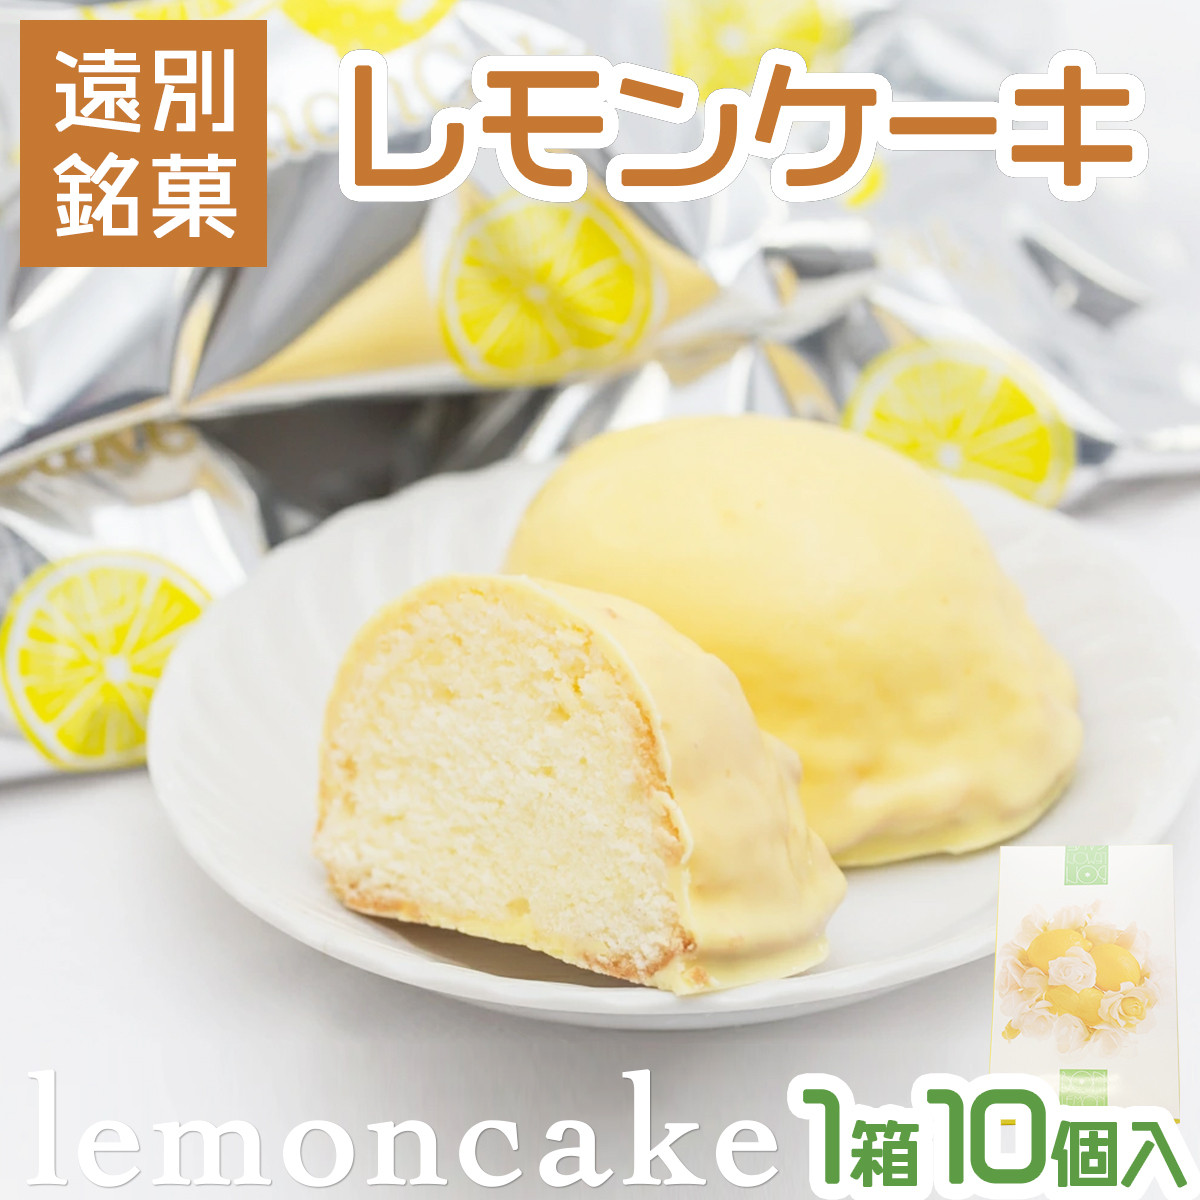 遠別銘菓のレモンケーキ